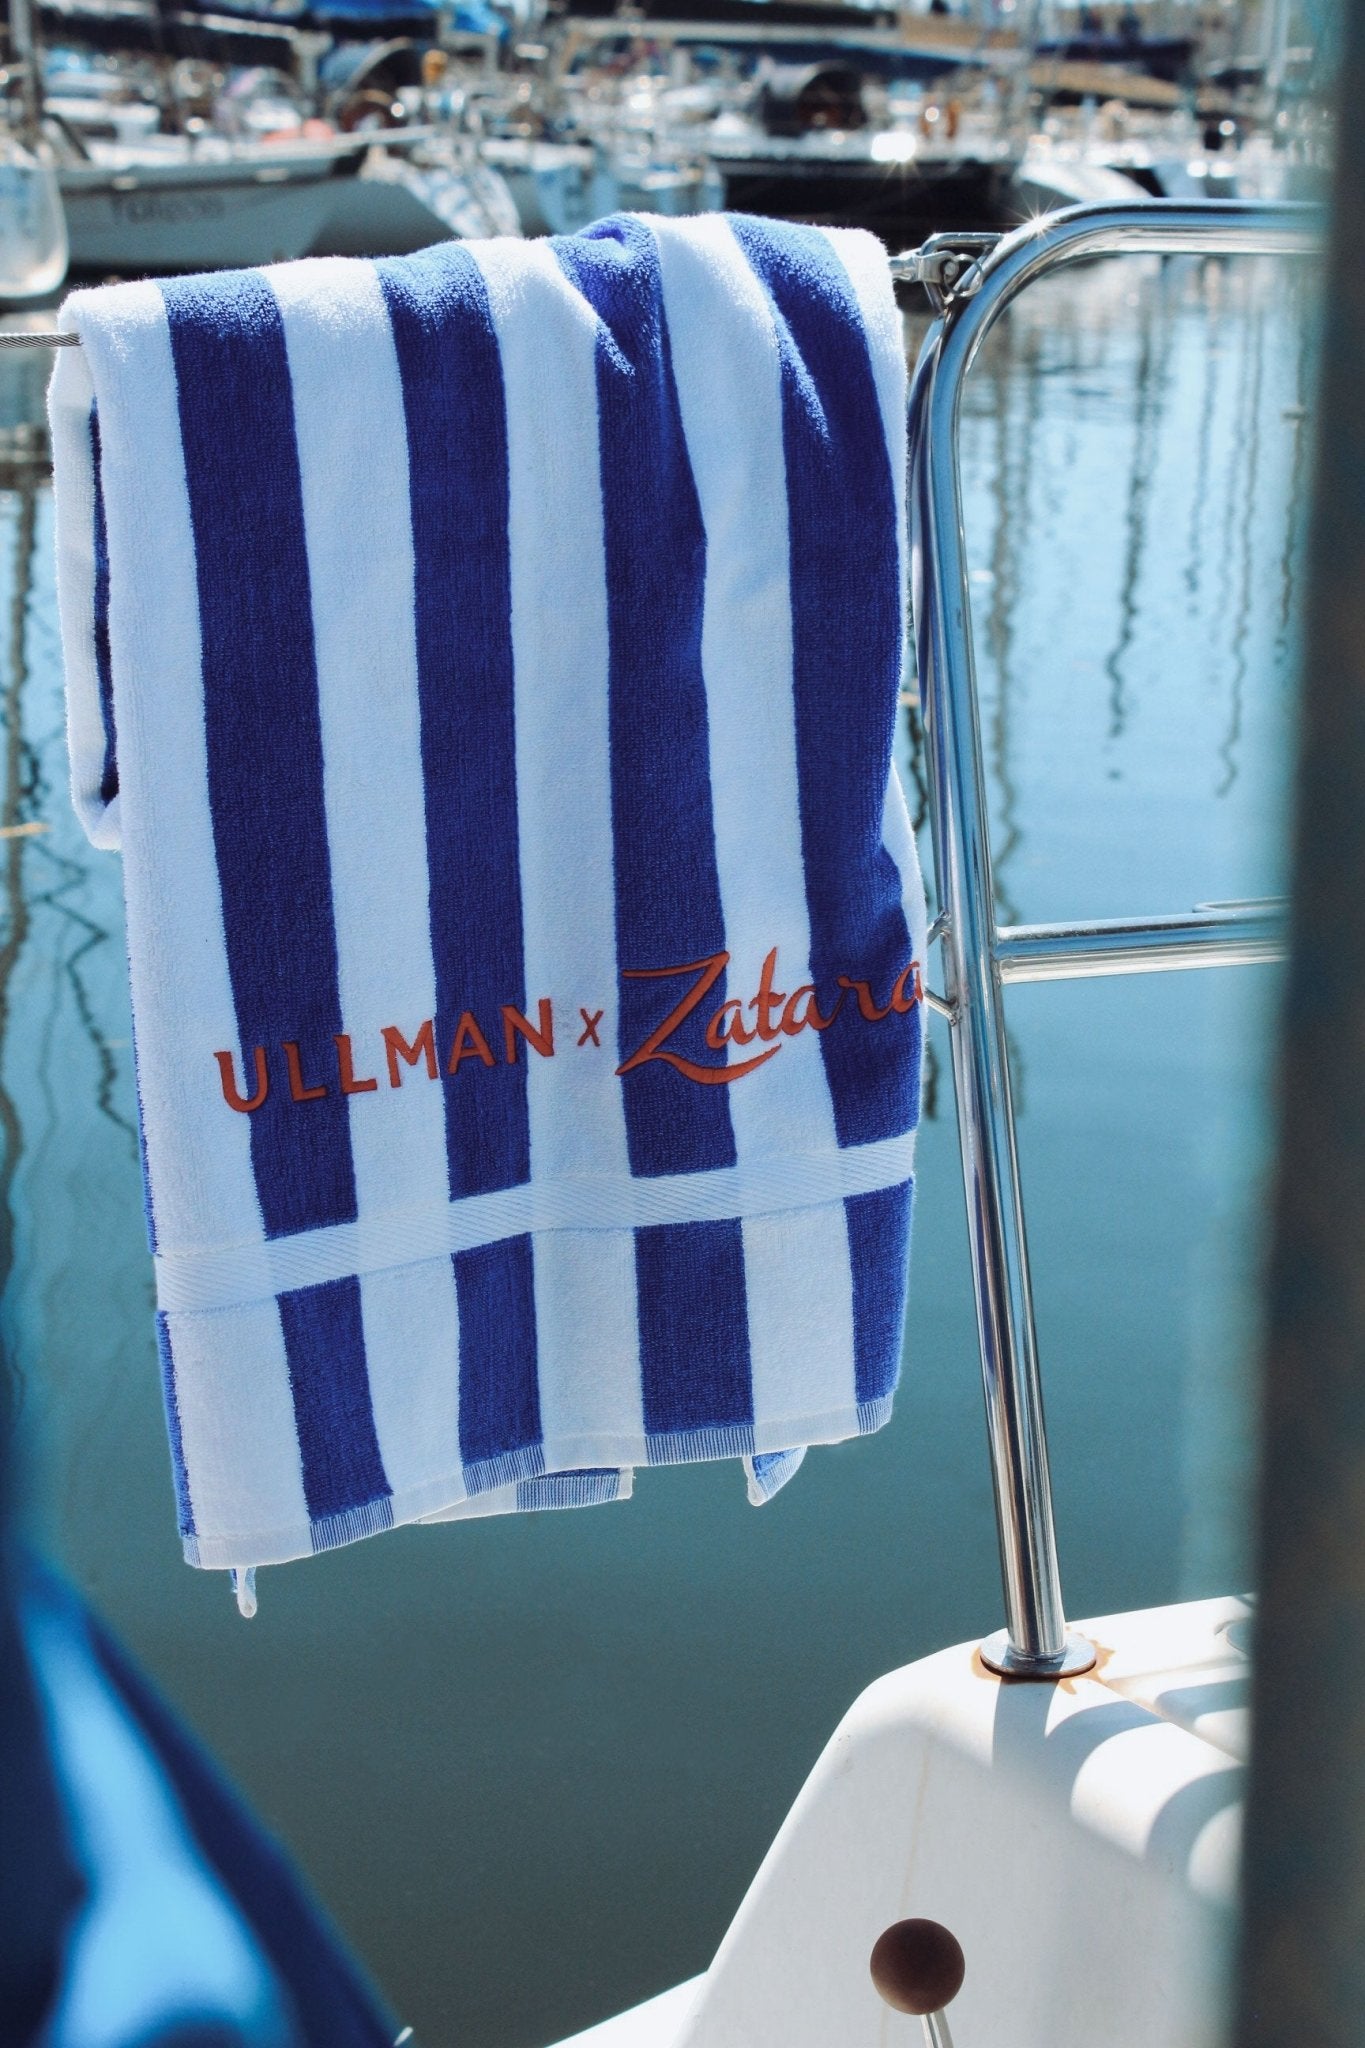 Ullman x Zatara Towel - Ullman Gear